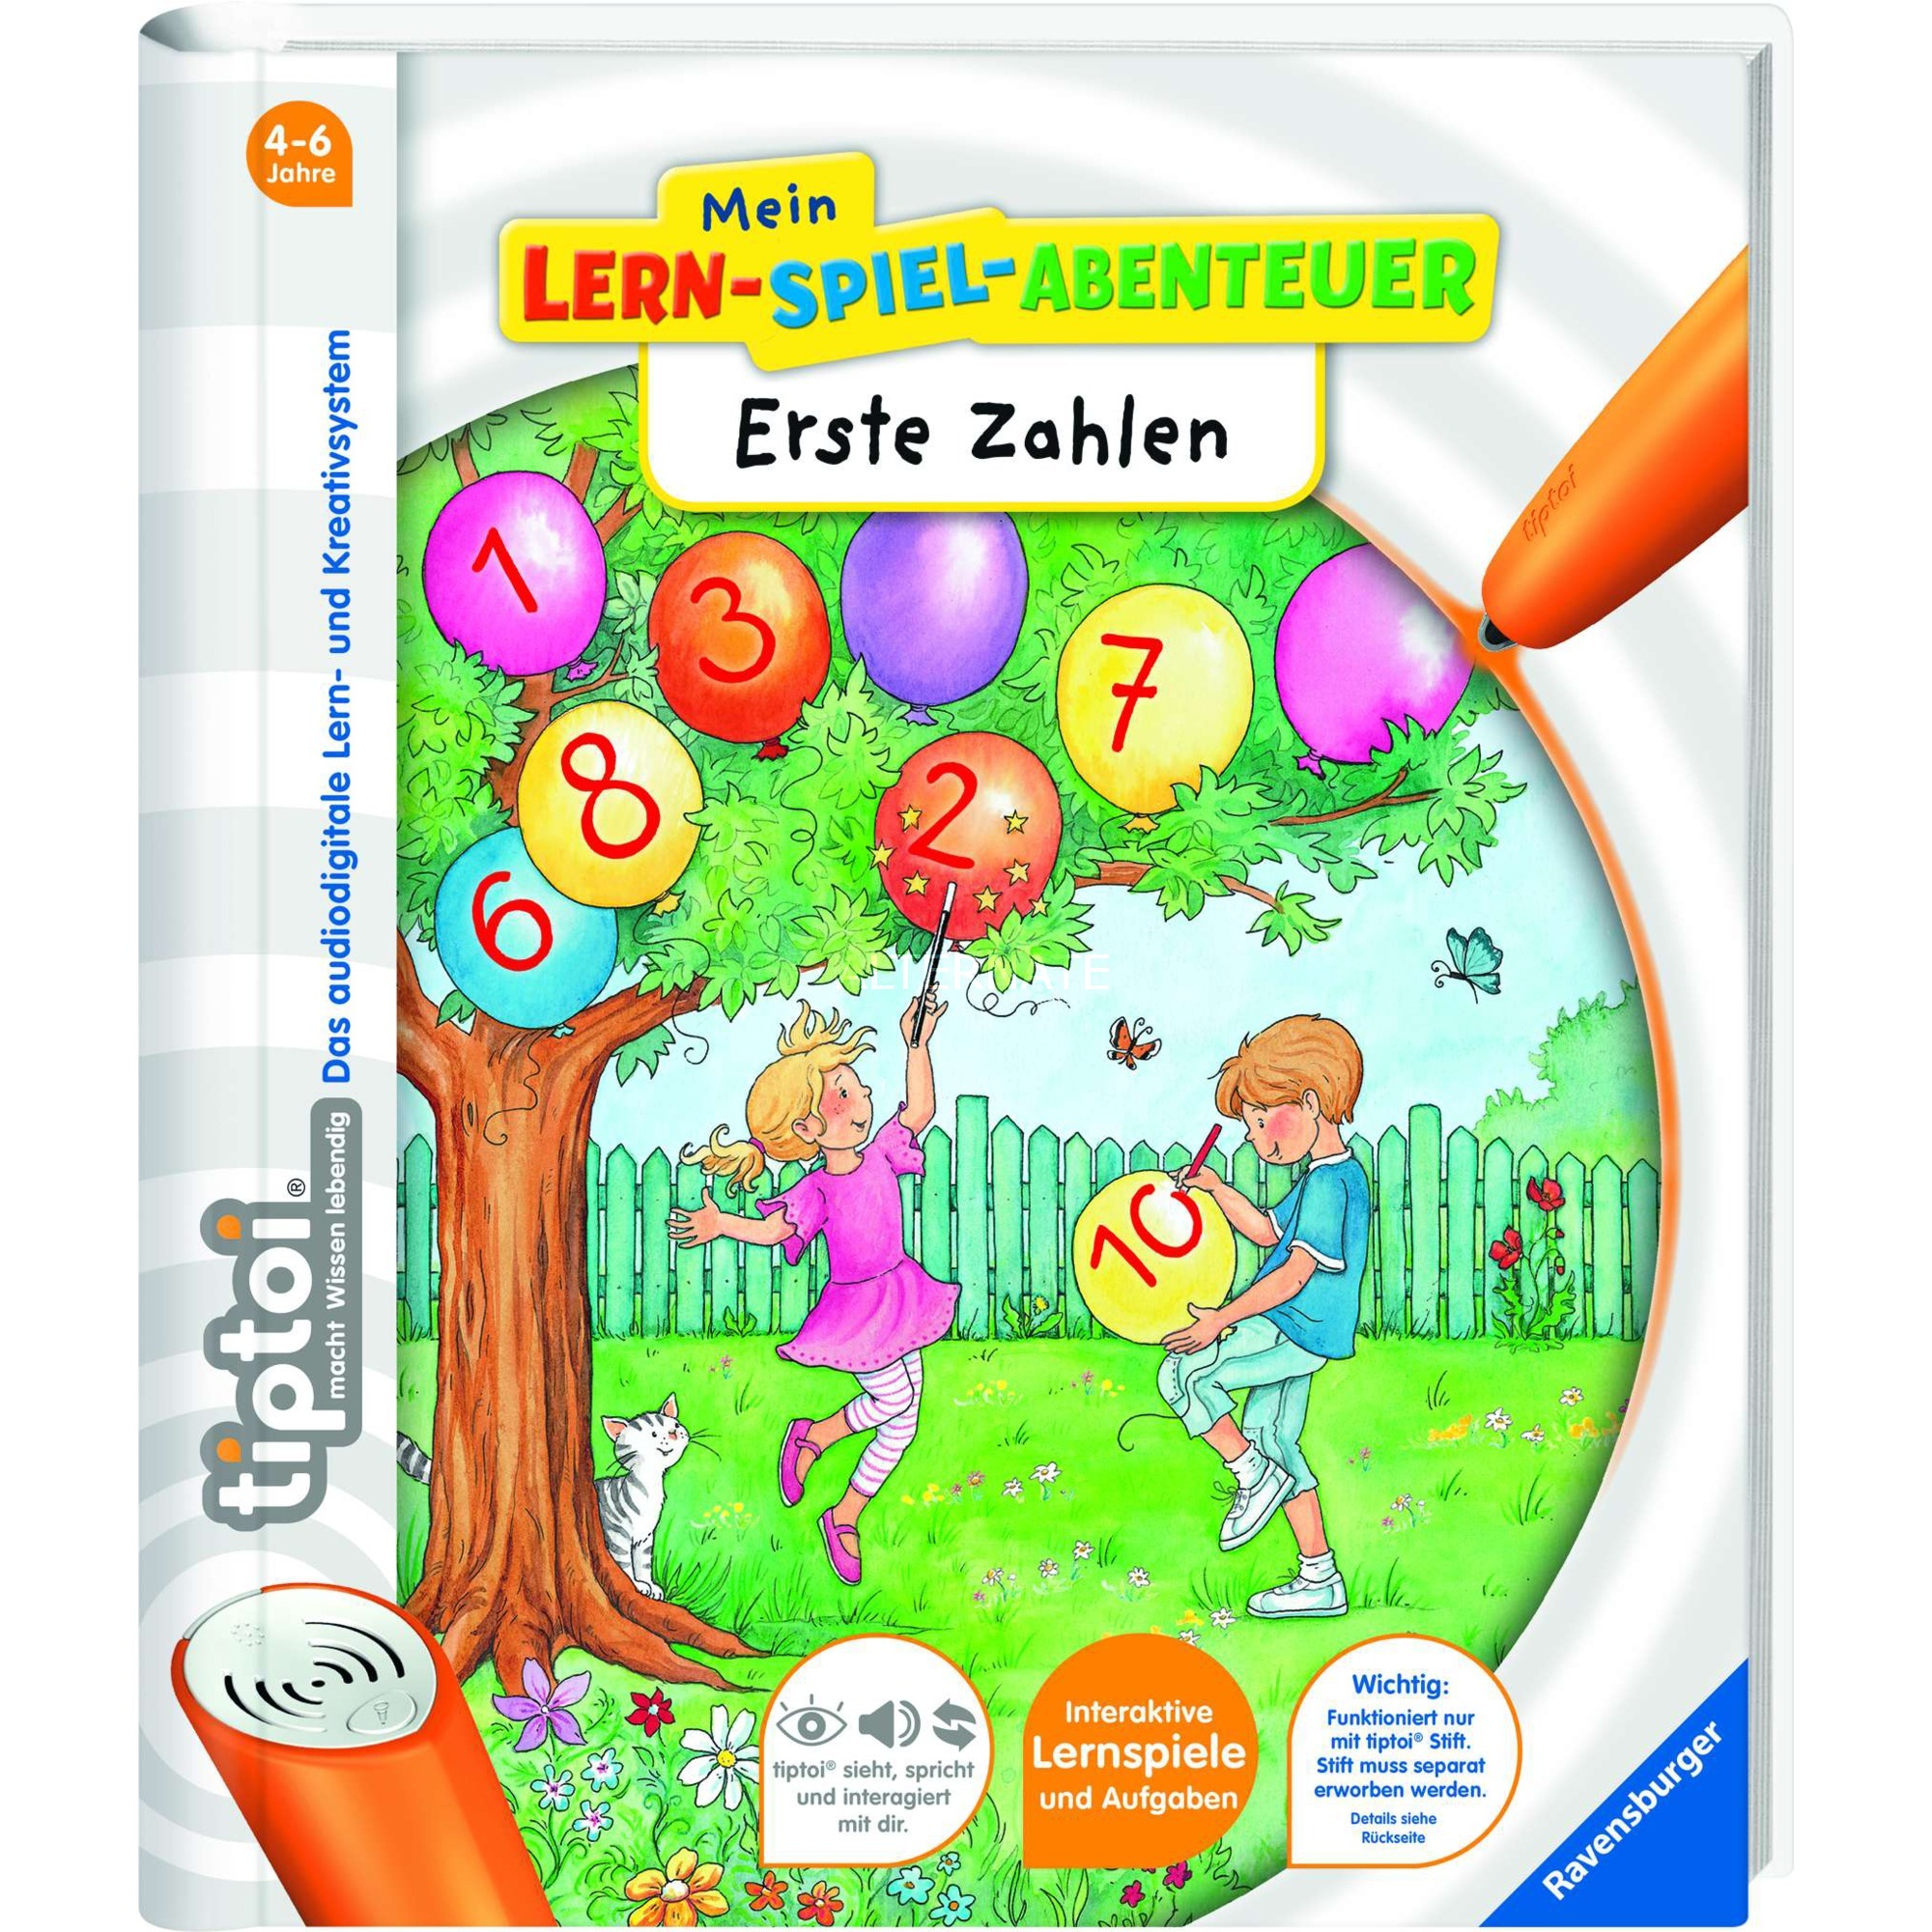 Image of Alternate - tiptoi Mein Lernspiel-Abenteuer: Erste Zahlen, Lernbuch online einkaufen bei Alternate